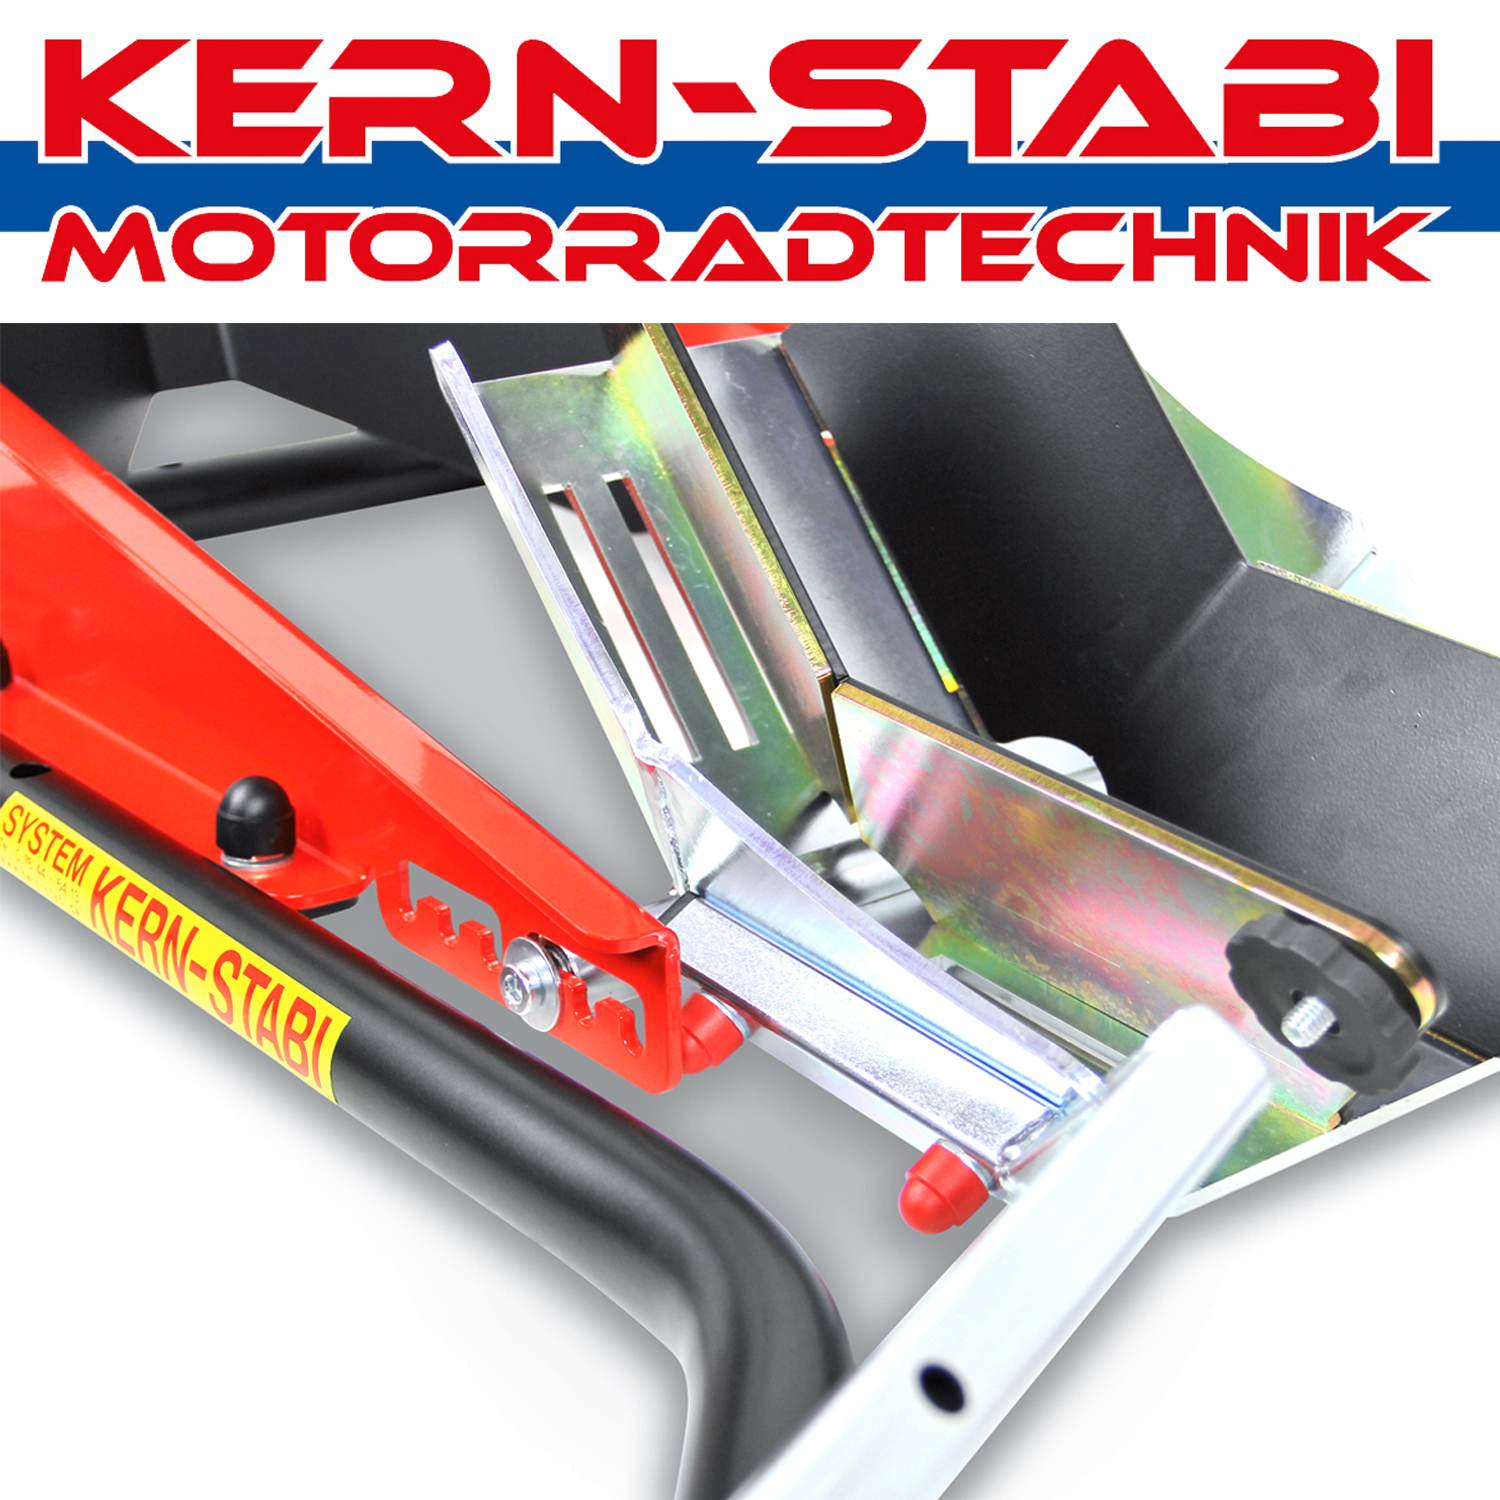 KERN-STABI Motorradtechnik, GUMMI-BLOCK-SATZ (4stck.-), KERN-STABI  Motorradtechnik, Made in Germany